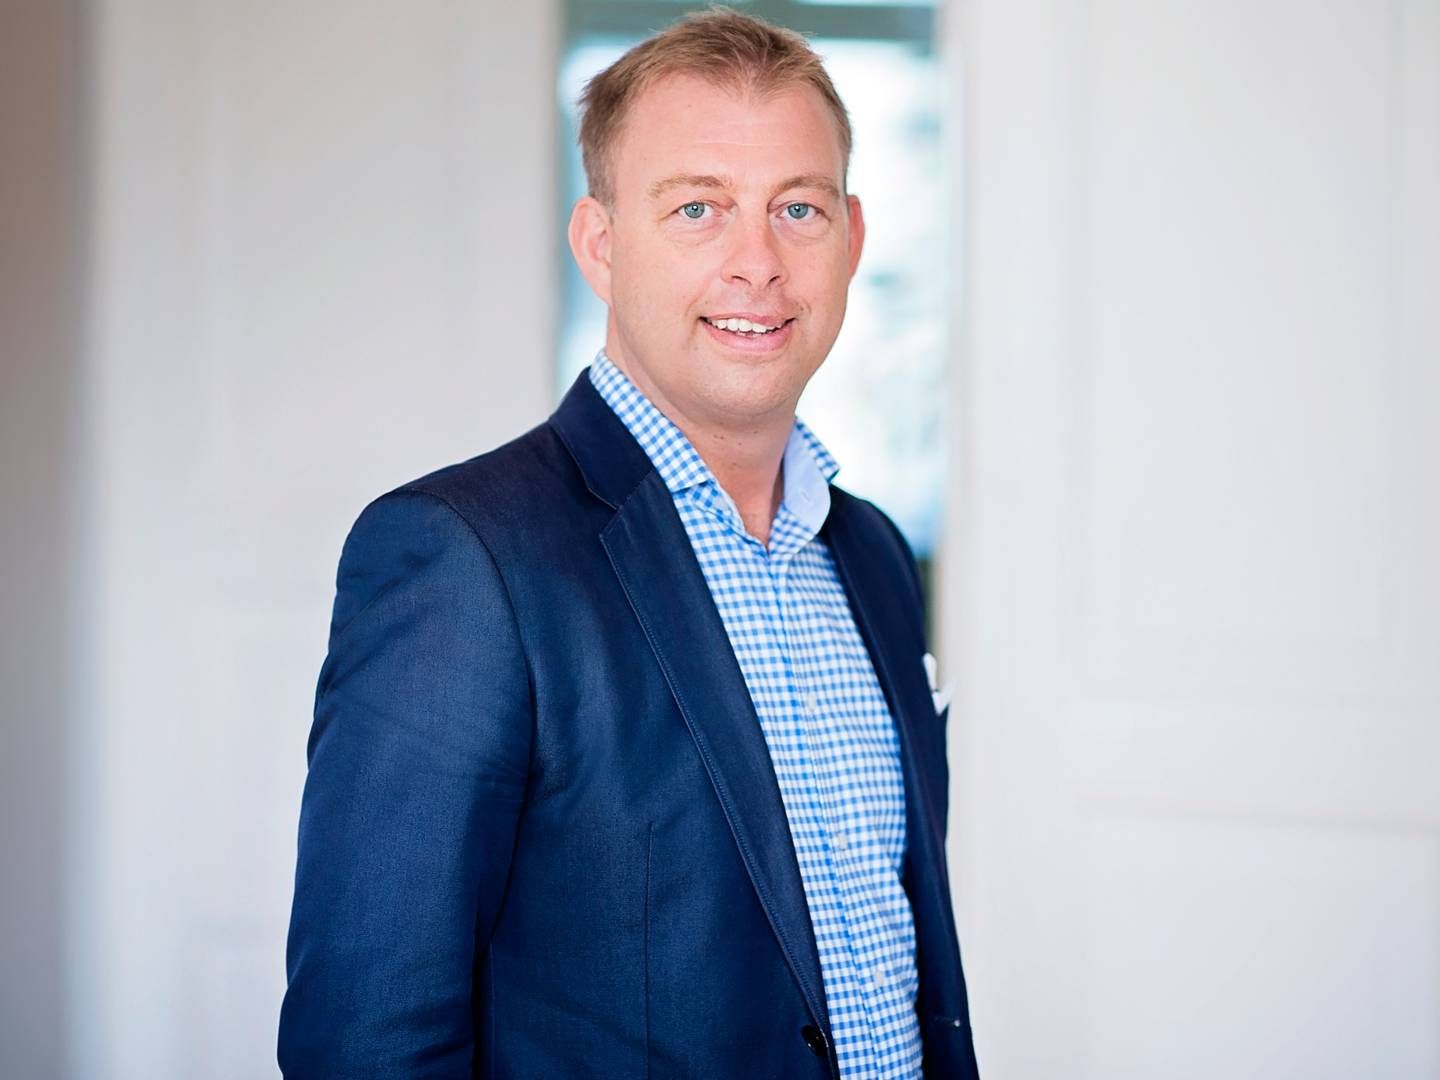 NY ØKONOMISJEF: Thomas Pehrsson er utnevnt som ny økonomidirektør i Kjell Group, eierselskapet til Kjell & Company. | Foto: Kjell Group